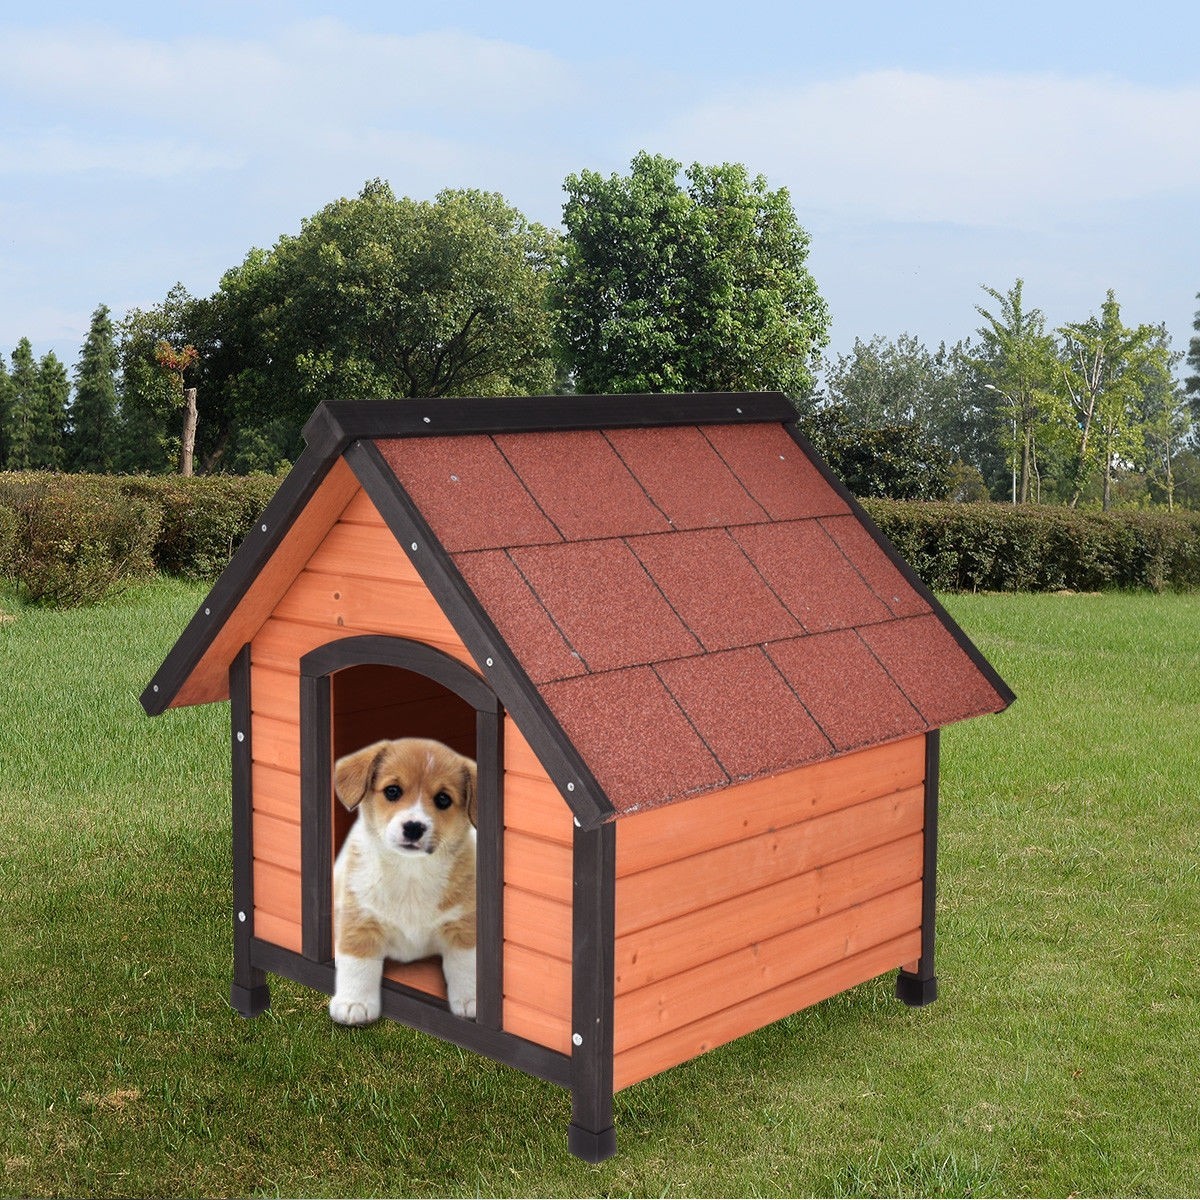 New dog house. Будка для собаки. Красивые будки для собак. Собака с конурой. Маленькая будка для собаки.